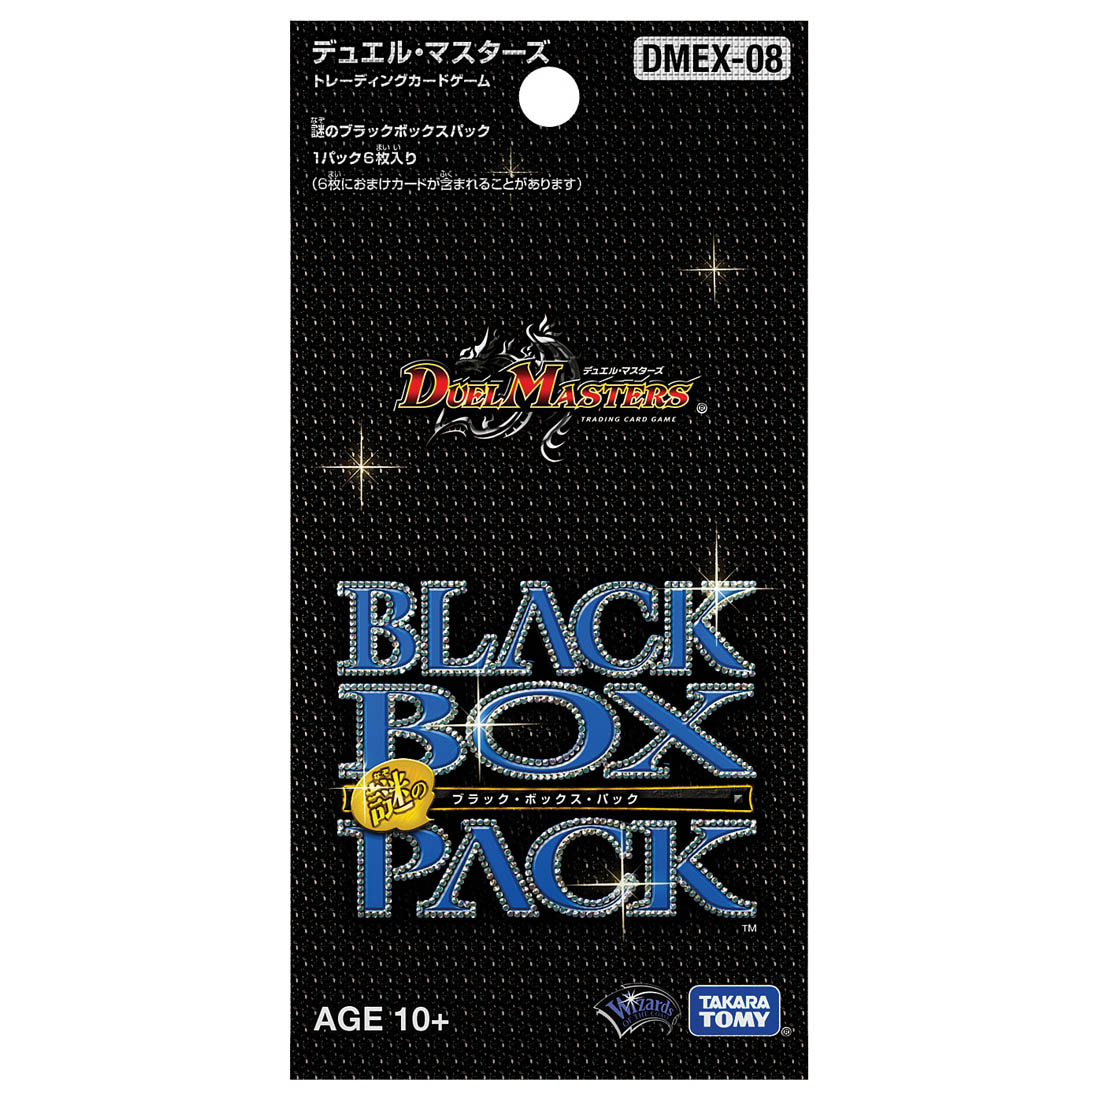 デュエル・マスターズTCG『DMEX-08 謎のブラックボックスパック DP-BOX』トレカ-002